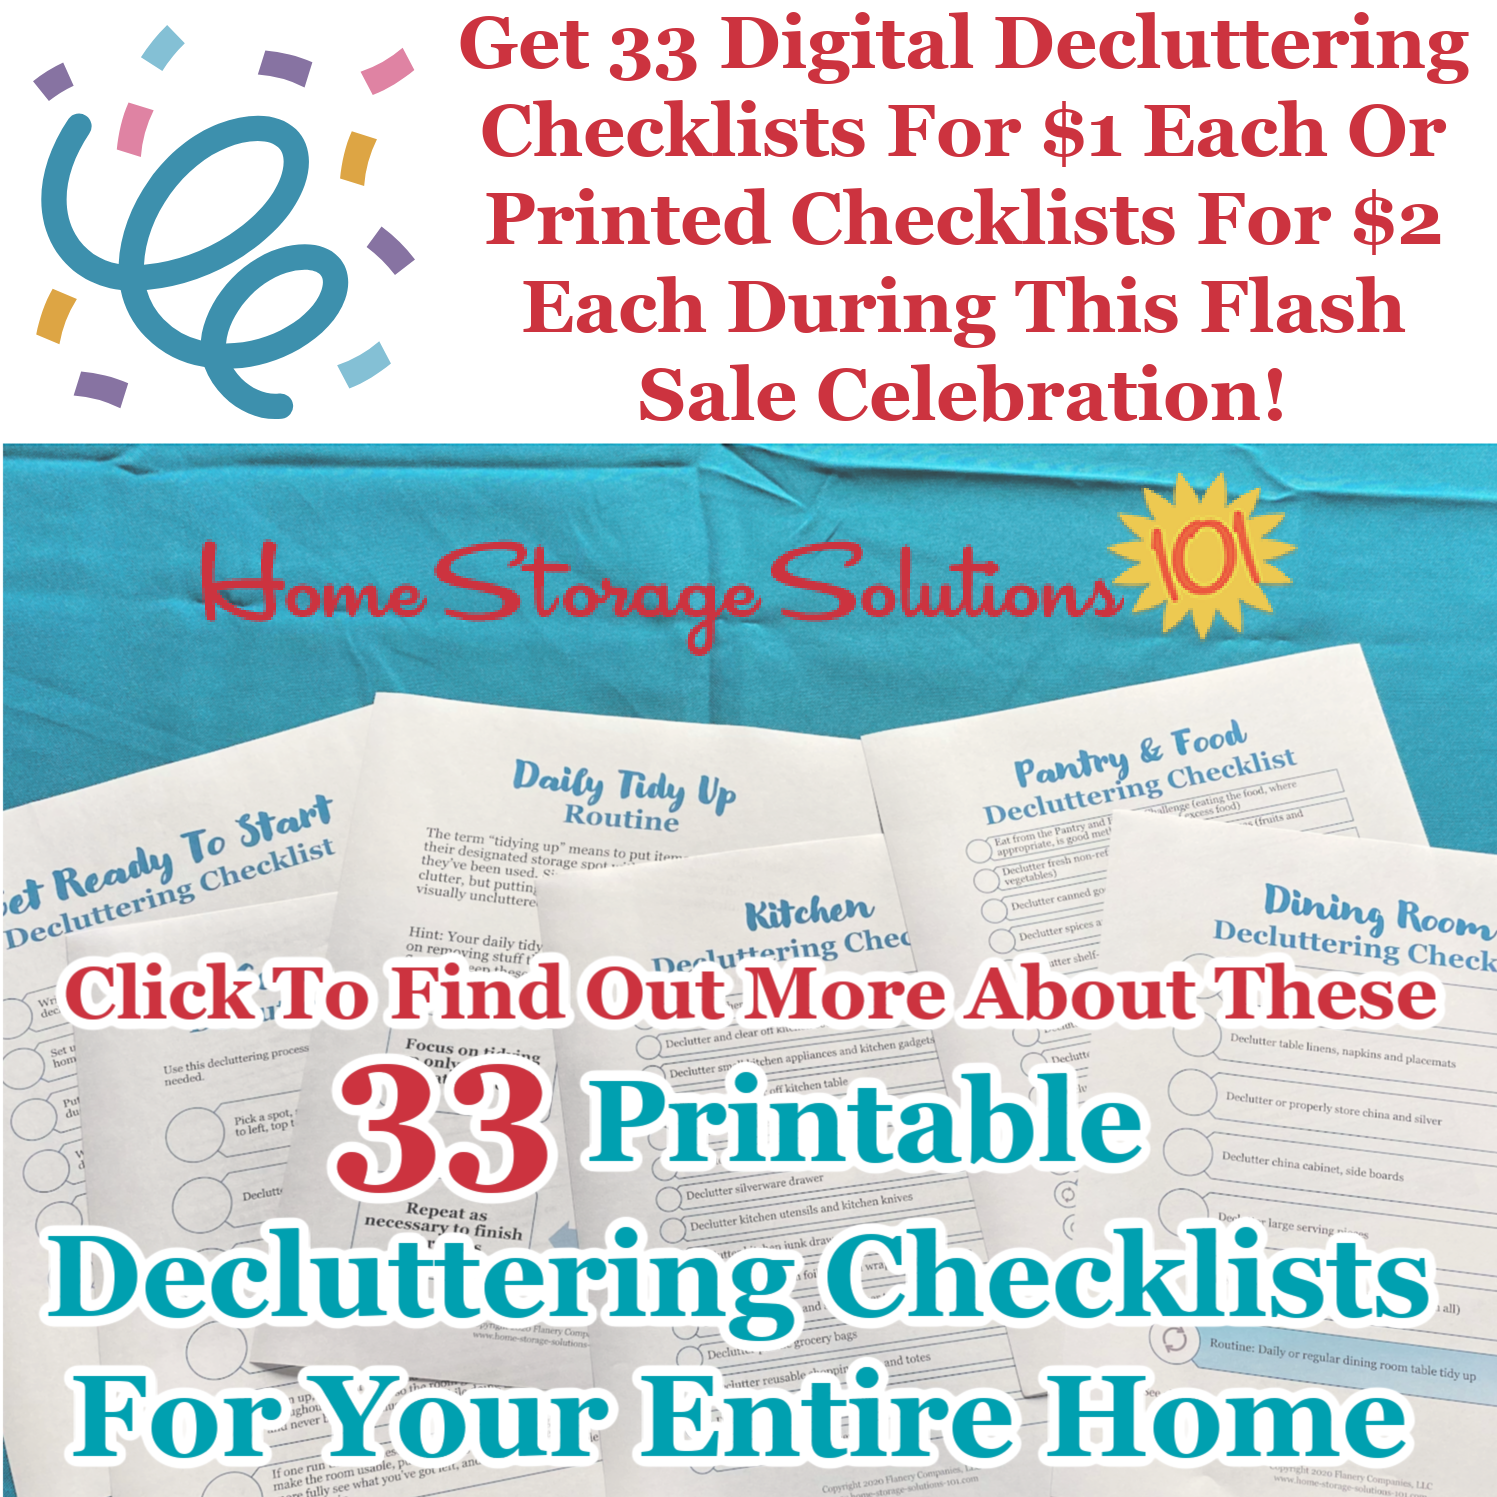 Get 33 digital decluttering checklists for $1 each or printed checklists for $2 each during this flash sale celebration